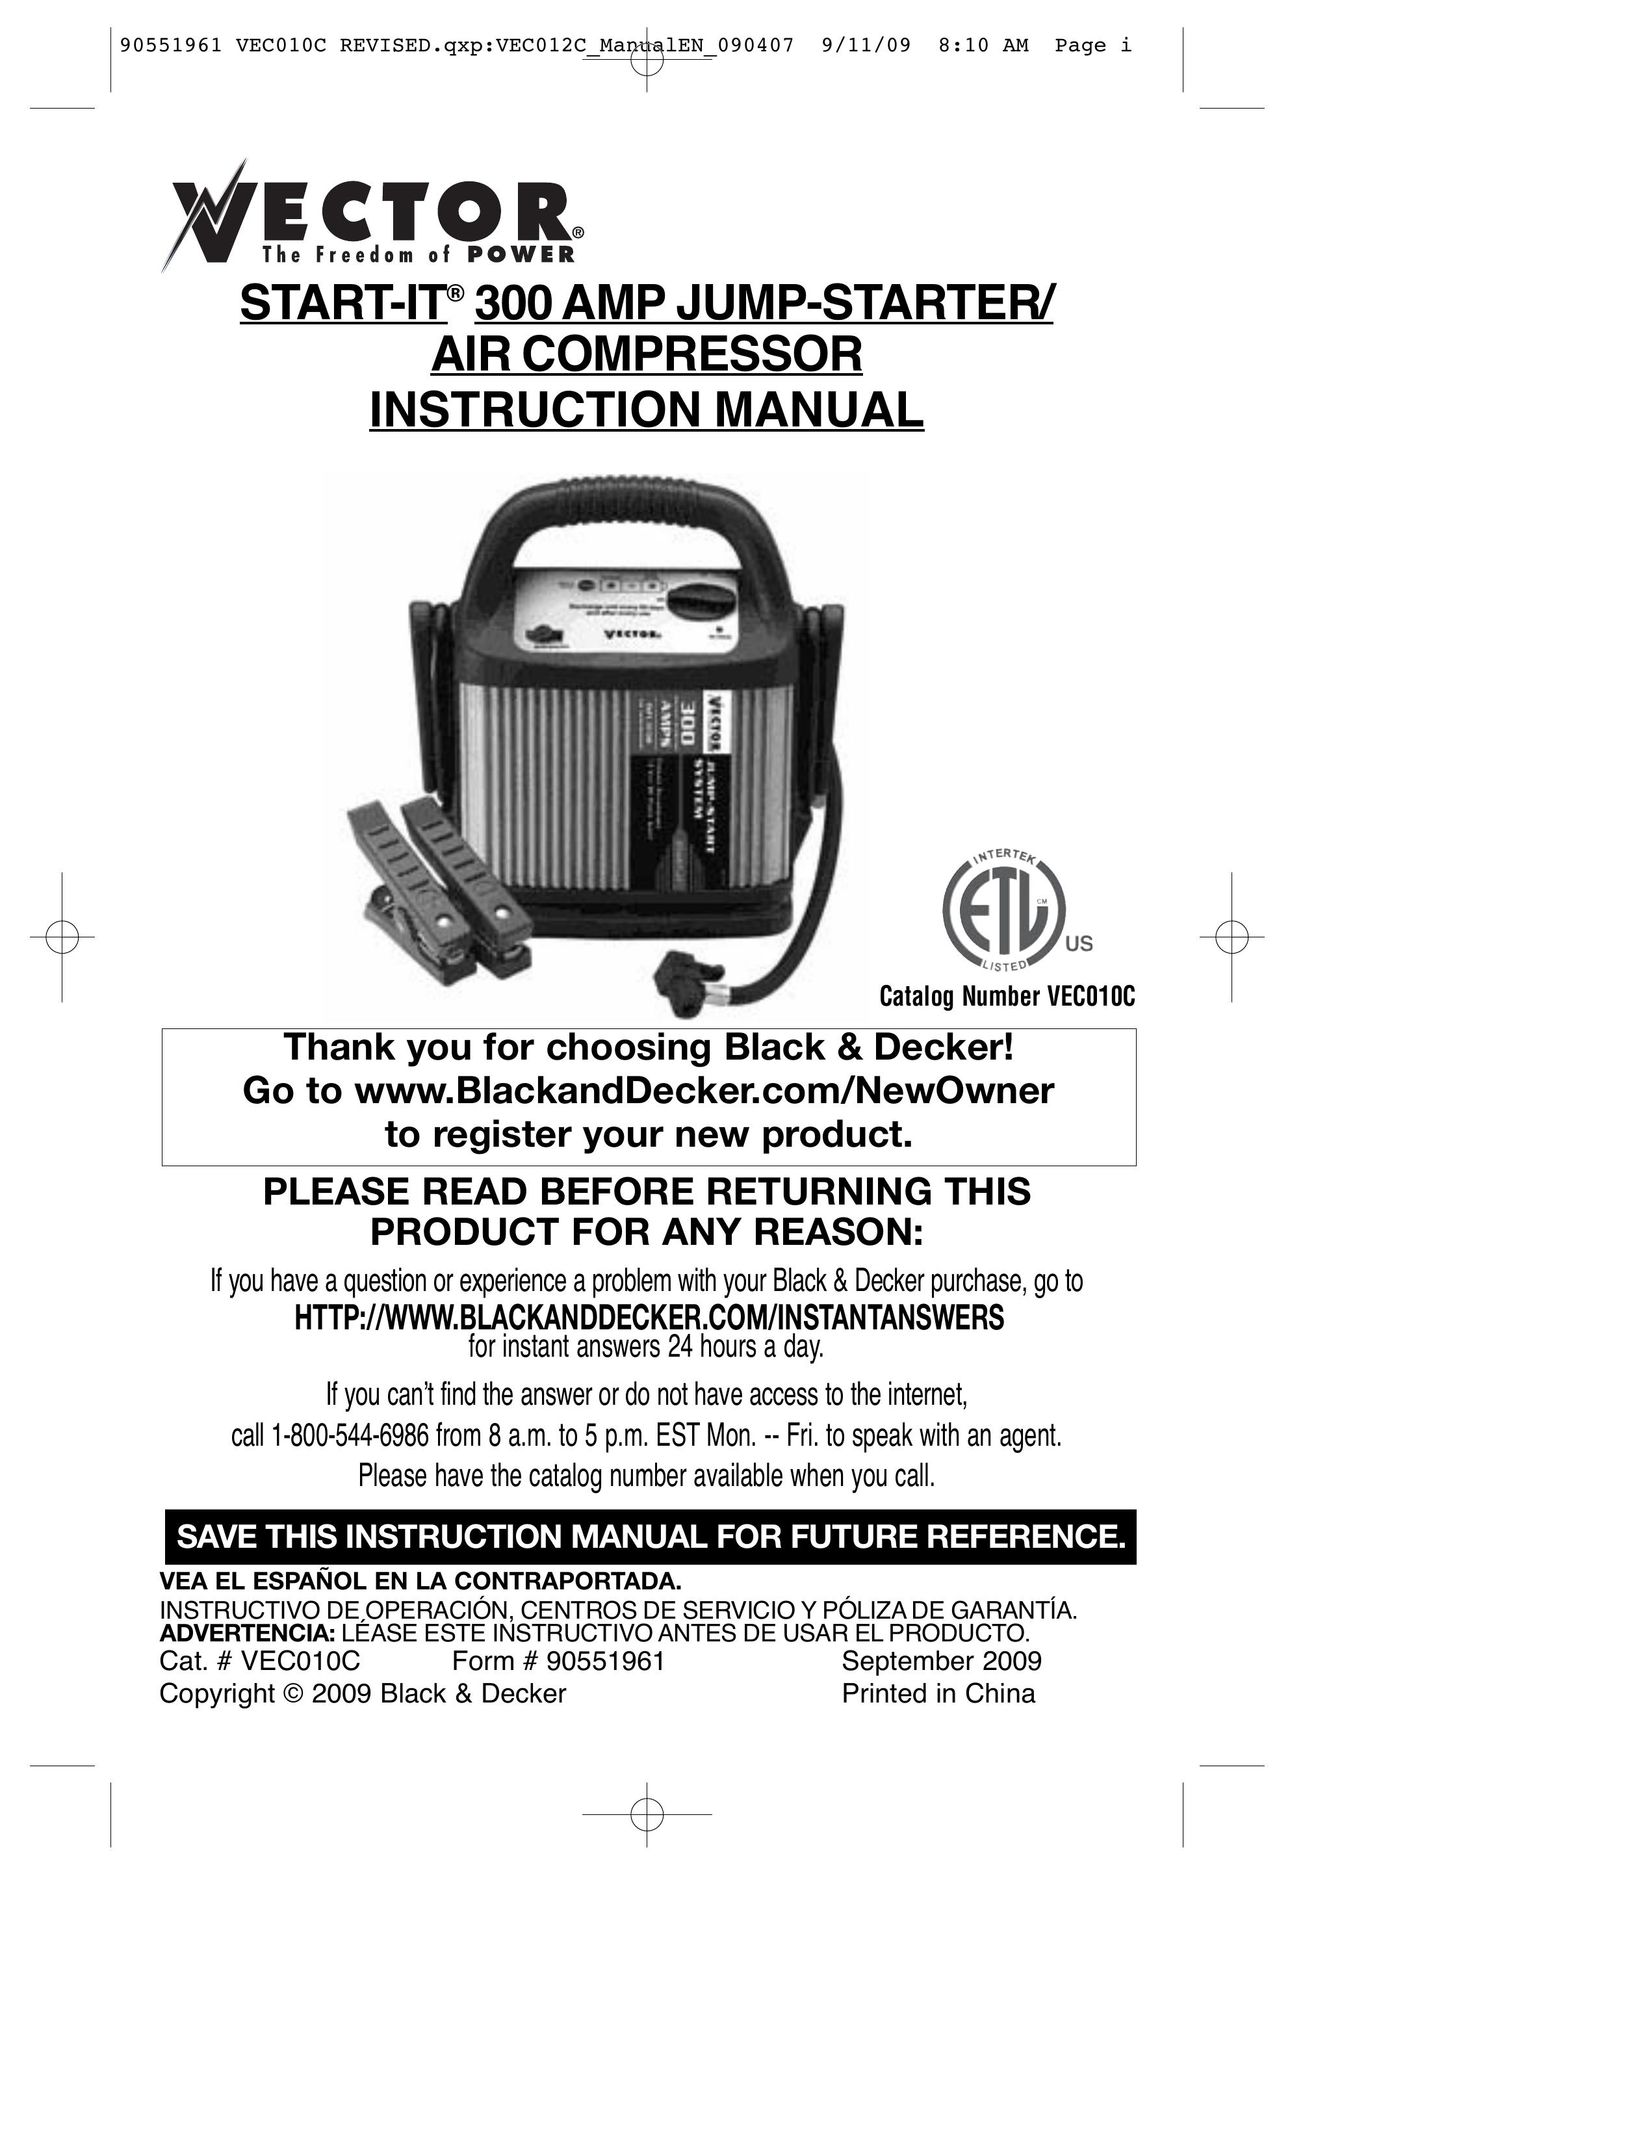 Vector VEC010C Air Compressor User Manual